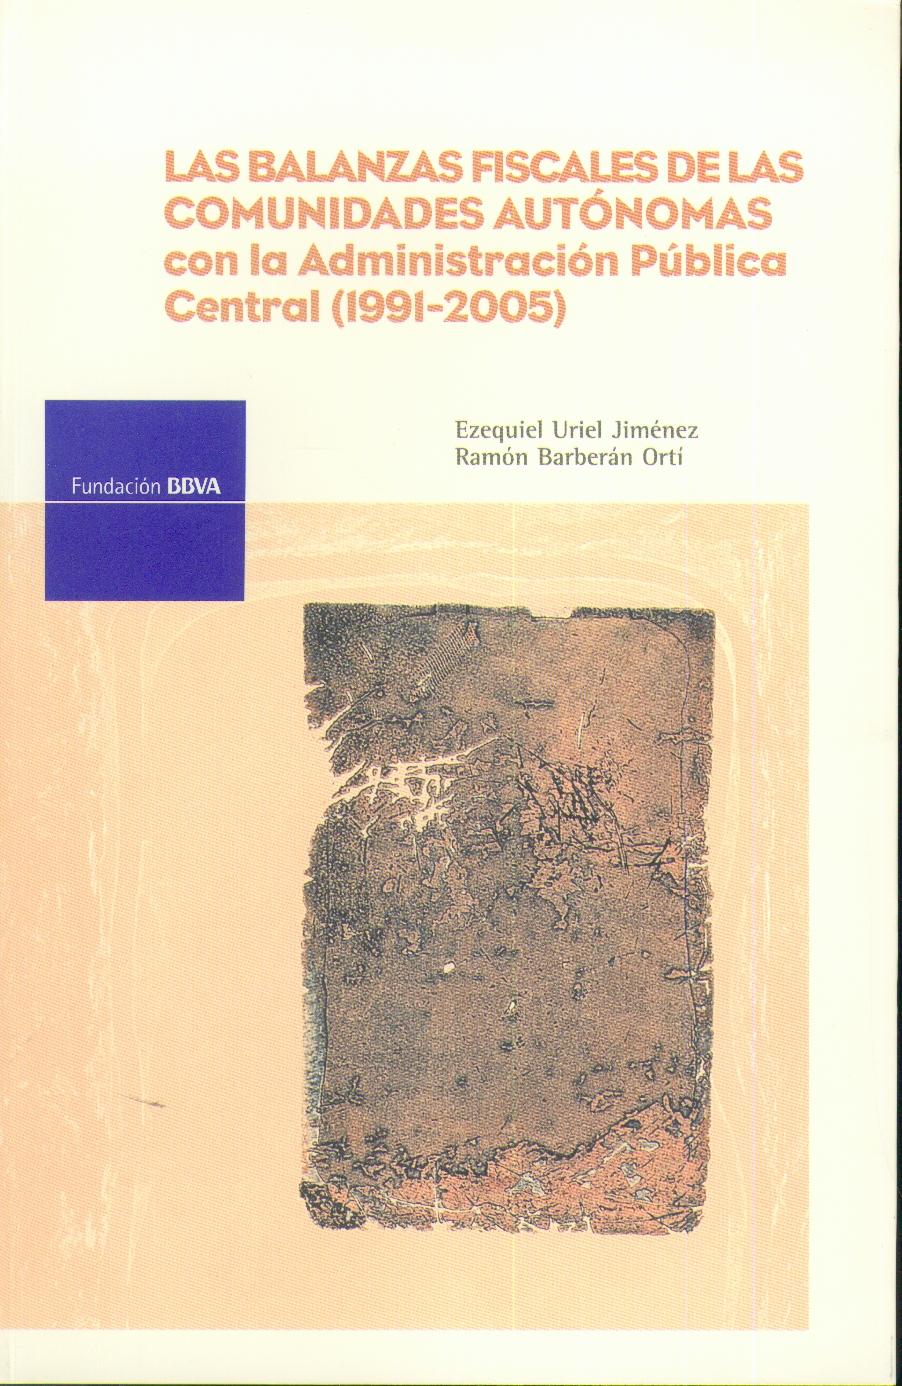 Las Balanzas Fiscales de las Comunidades Autonomas con la Administracion Publica Central (1991-2005)